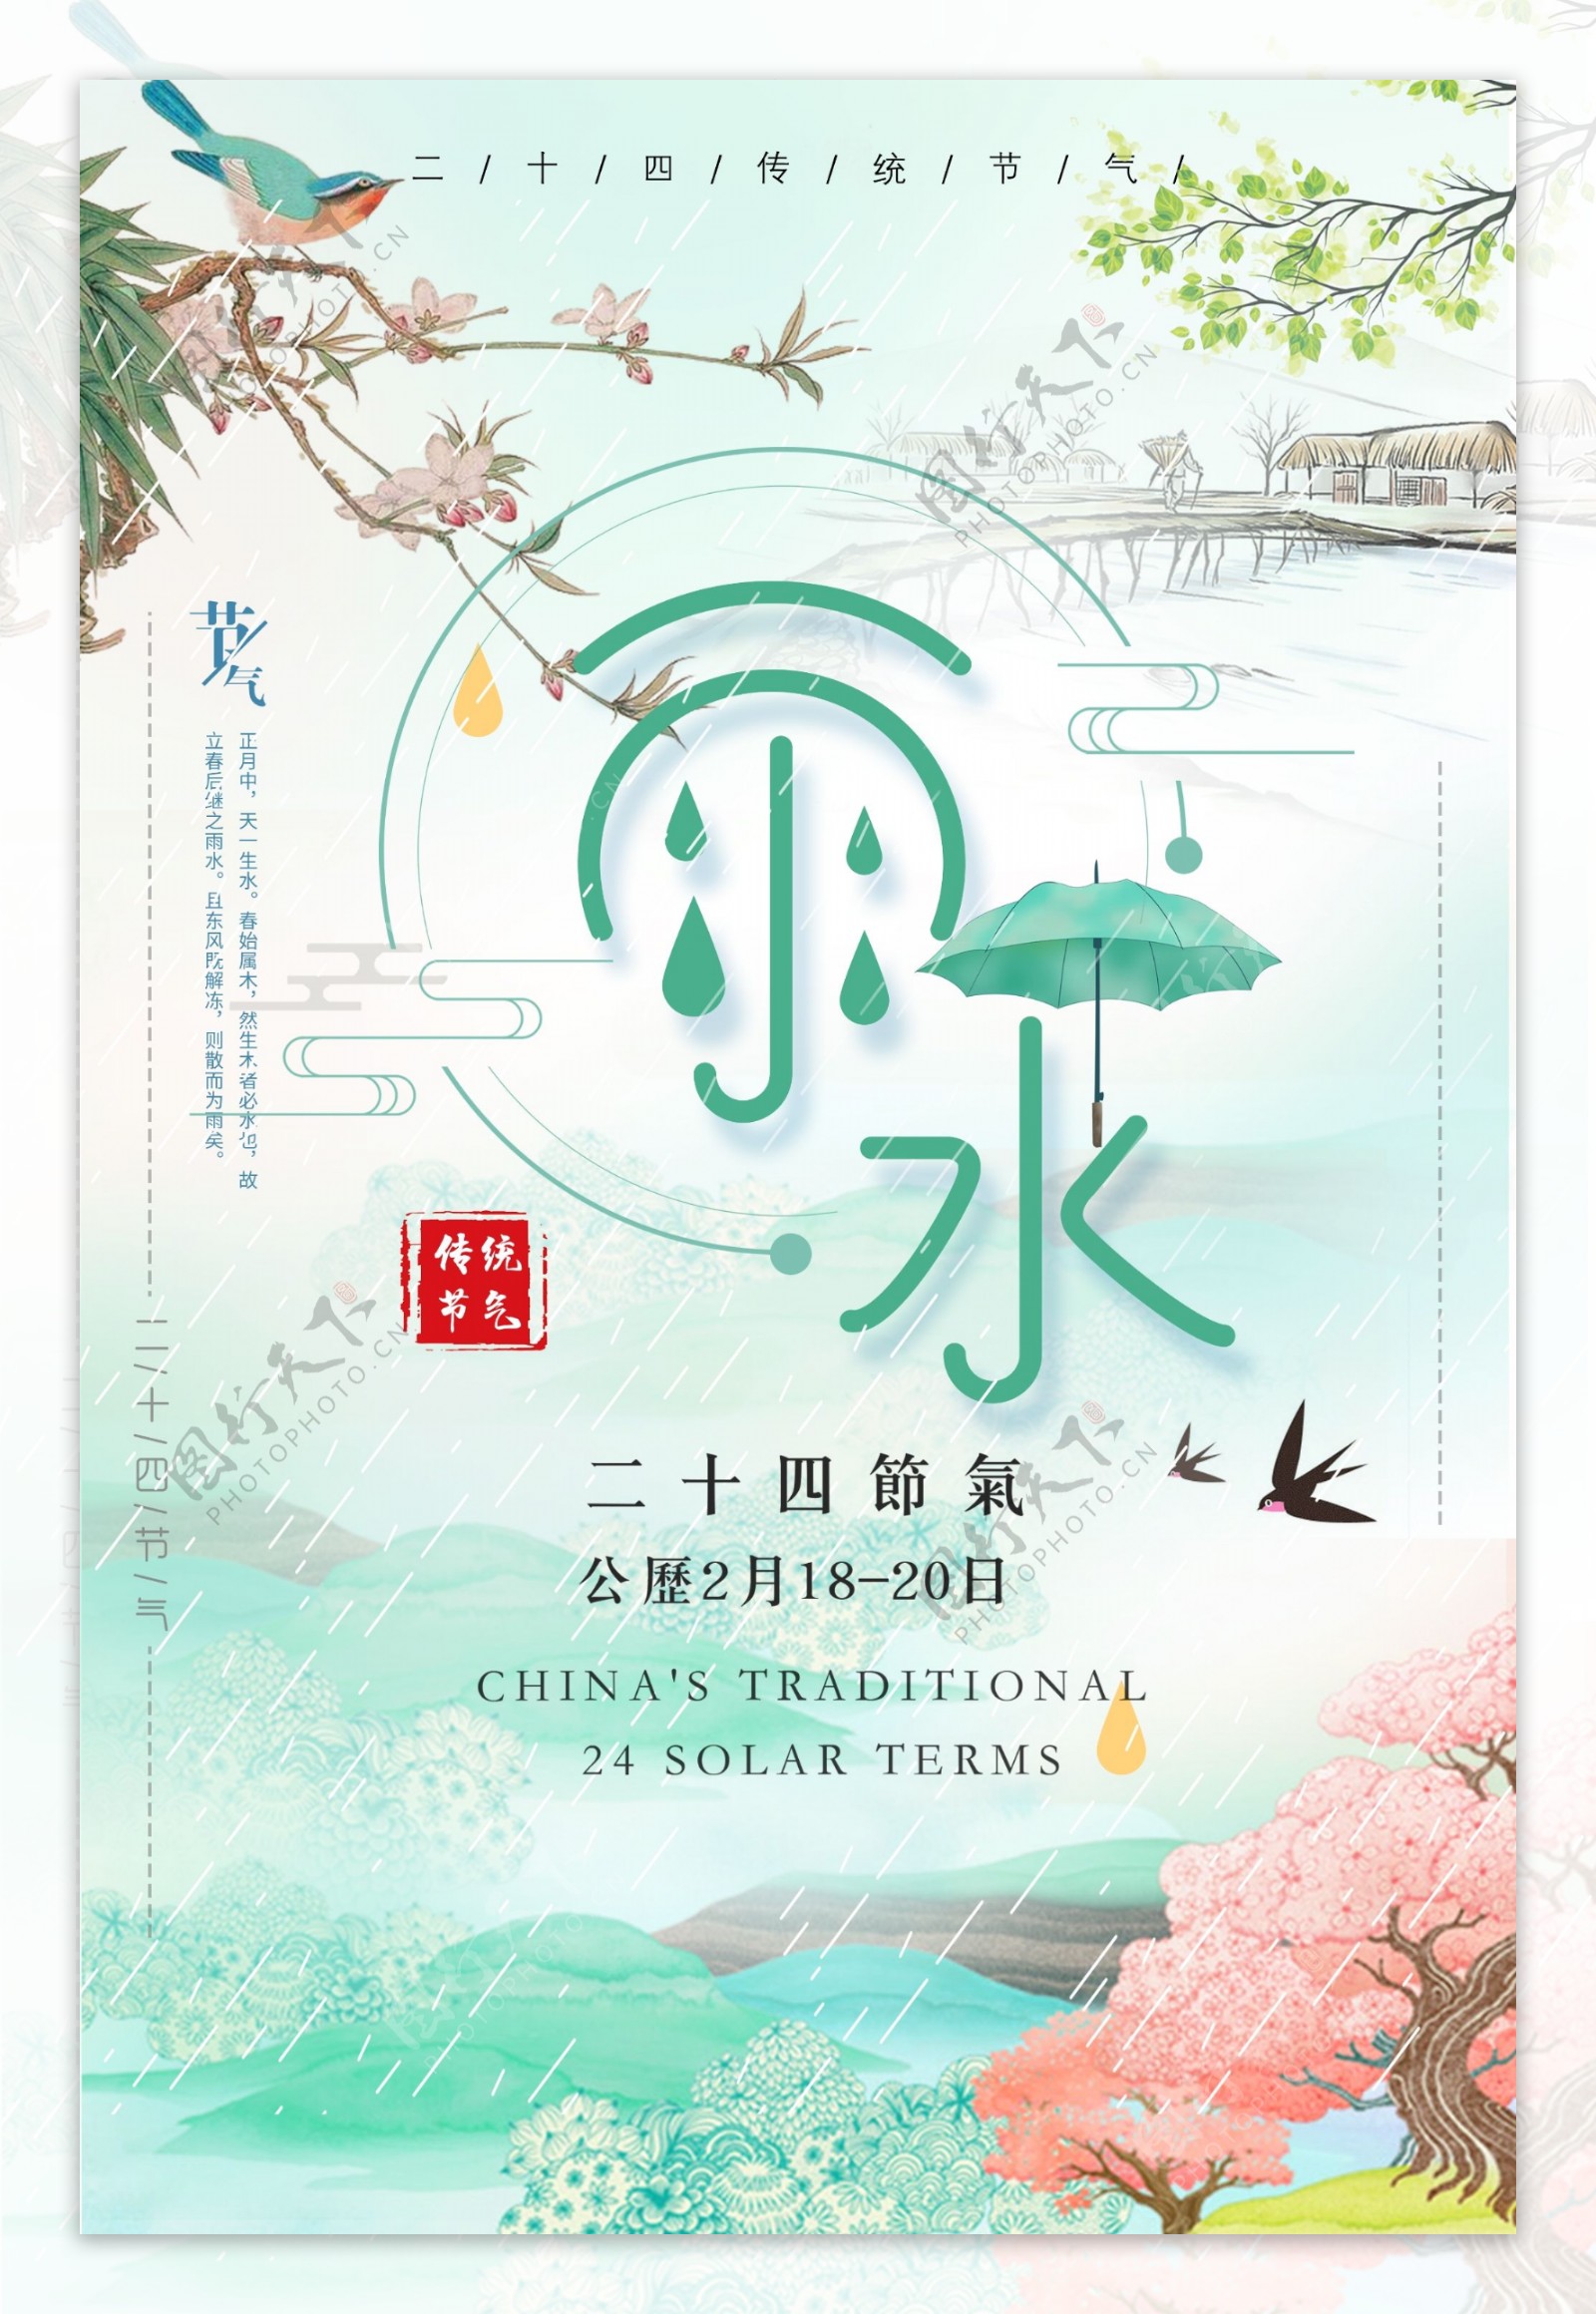 创意二十四节气雨水海报中国节气海报